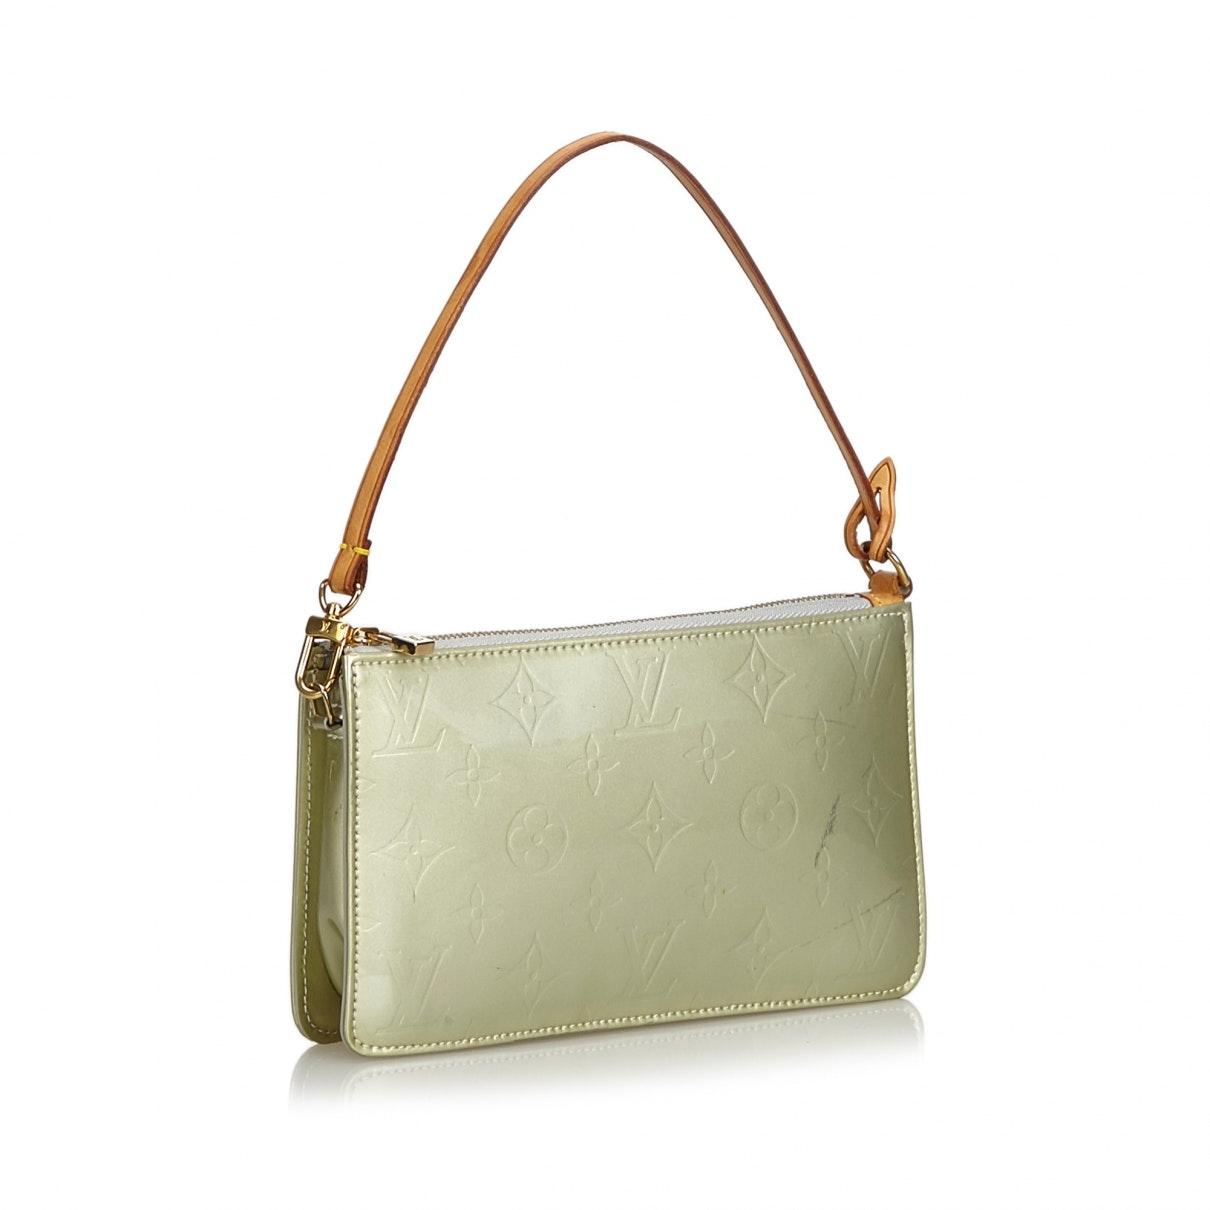 Rachel Green Louis Vuitton Bags For Women | semashow.com